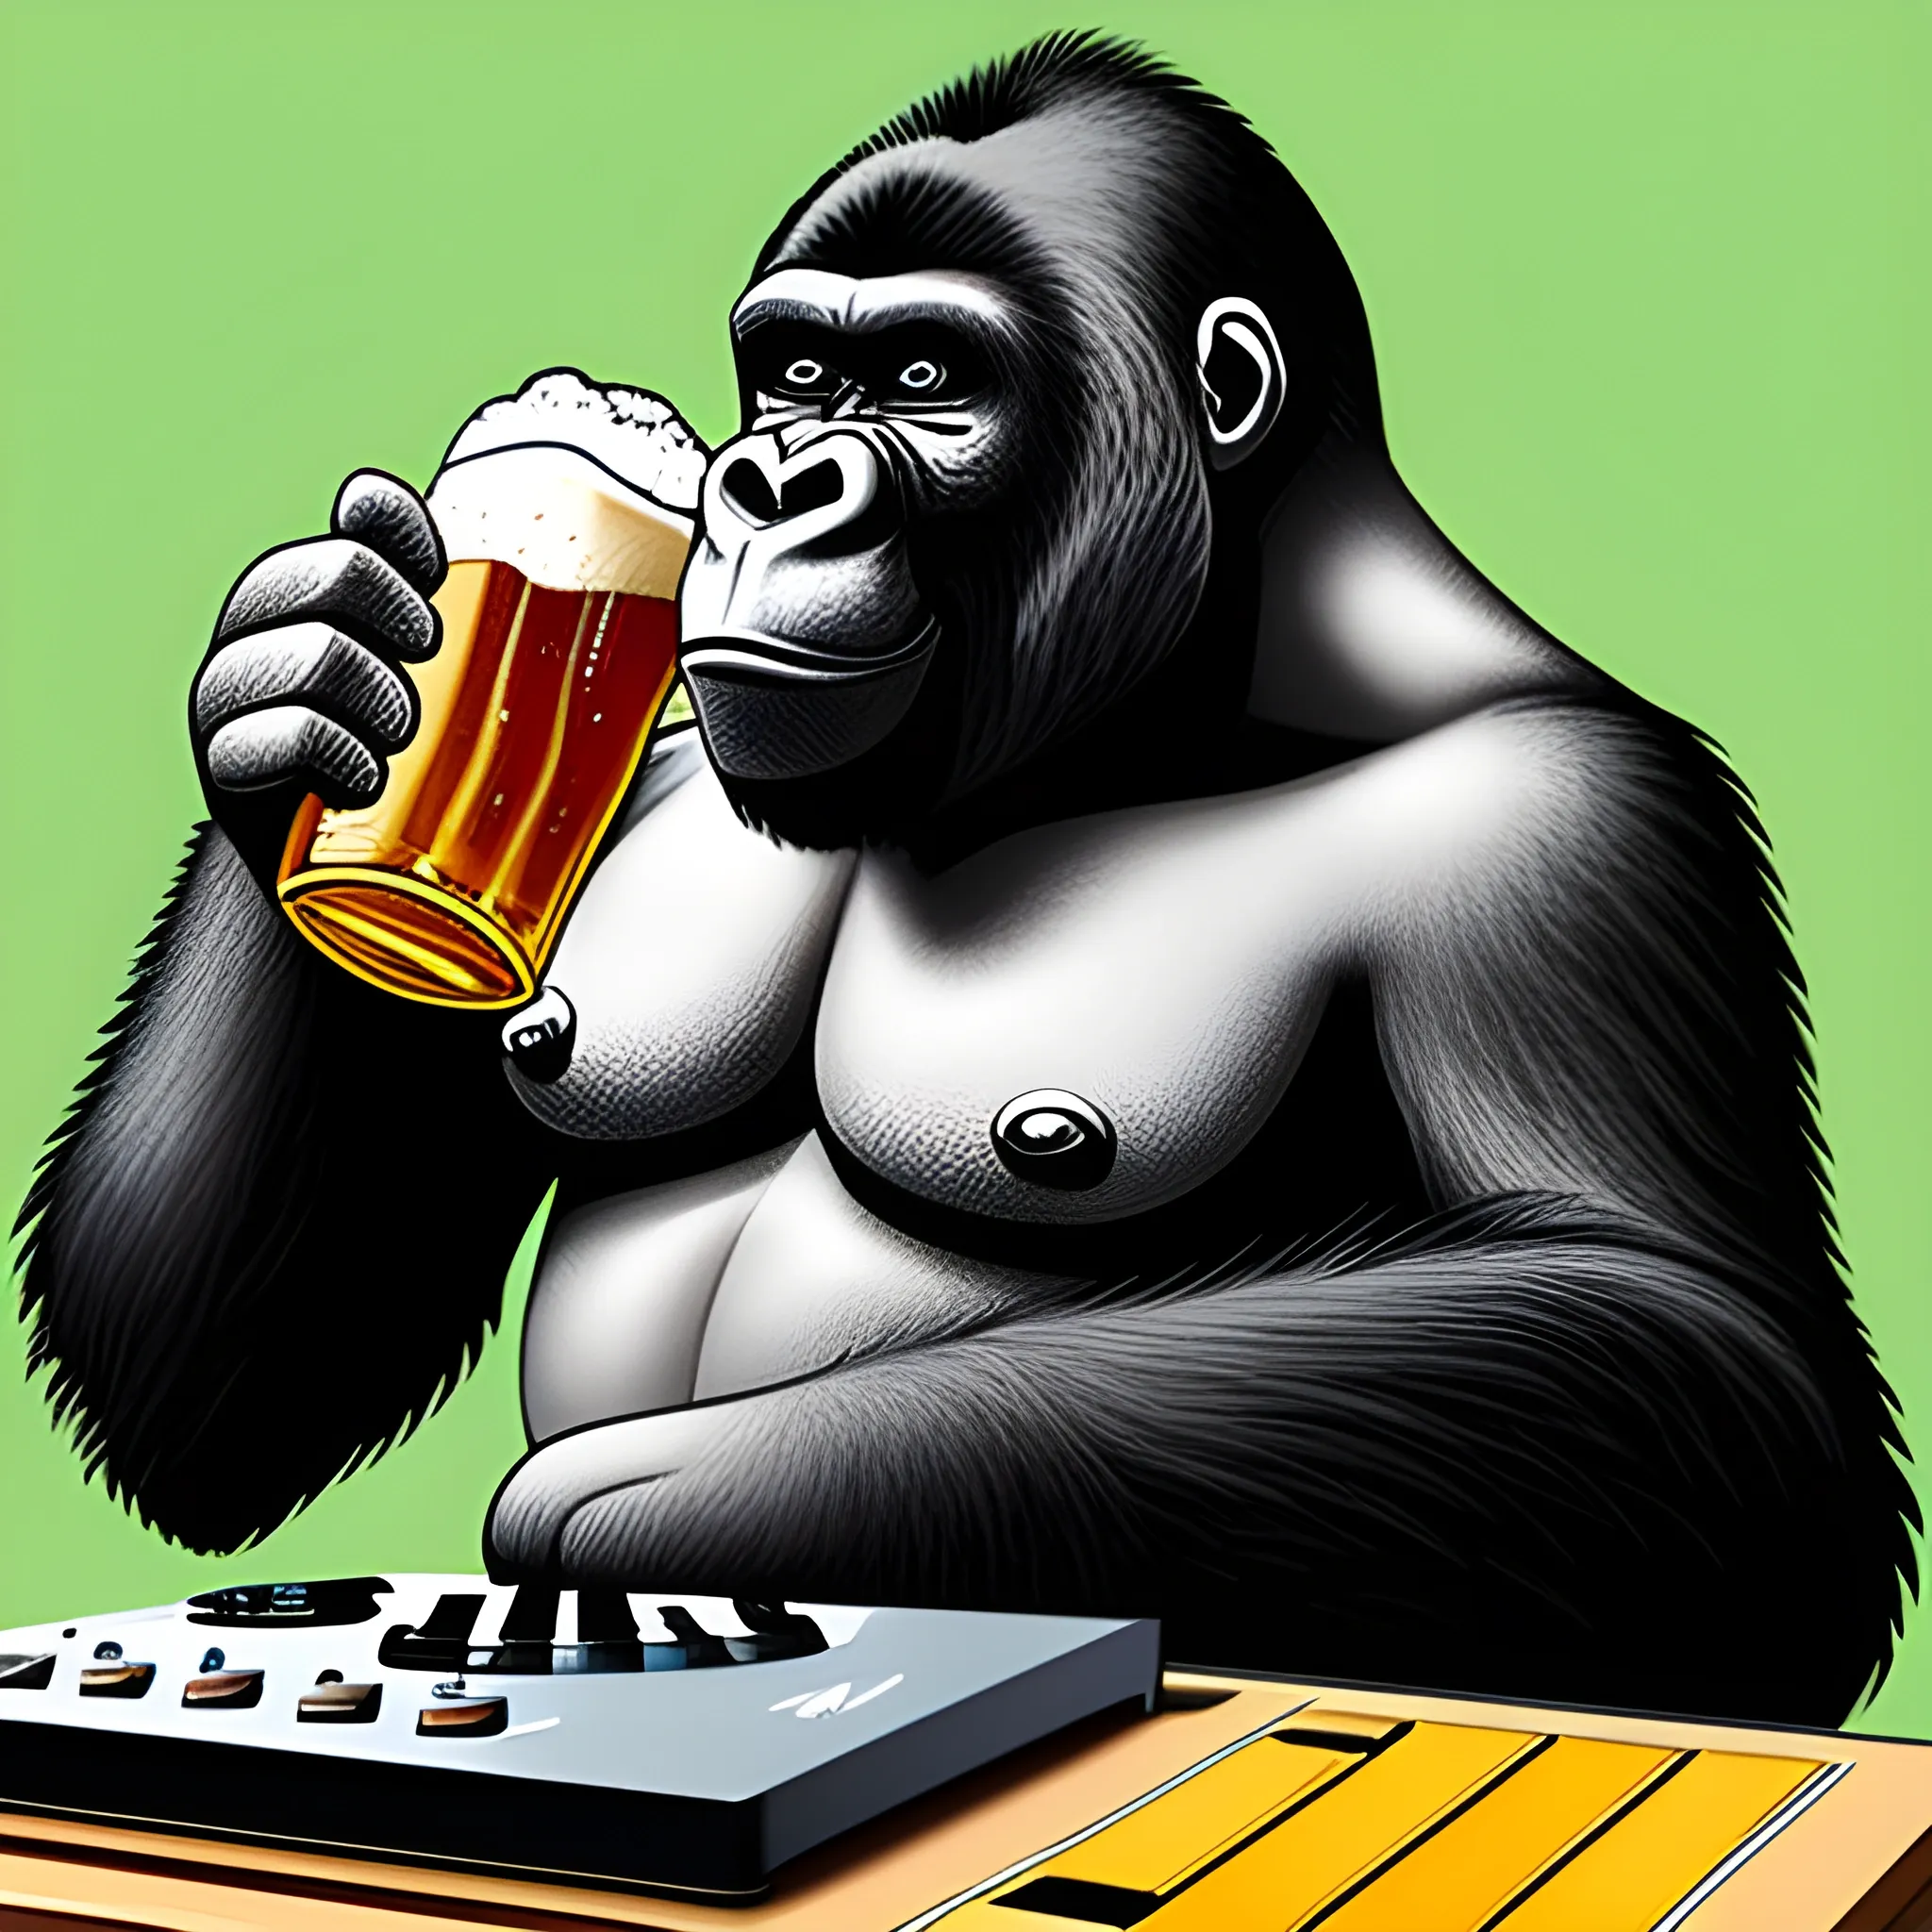 Gorilla dj, drinking beer, Cartoon, 